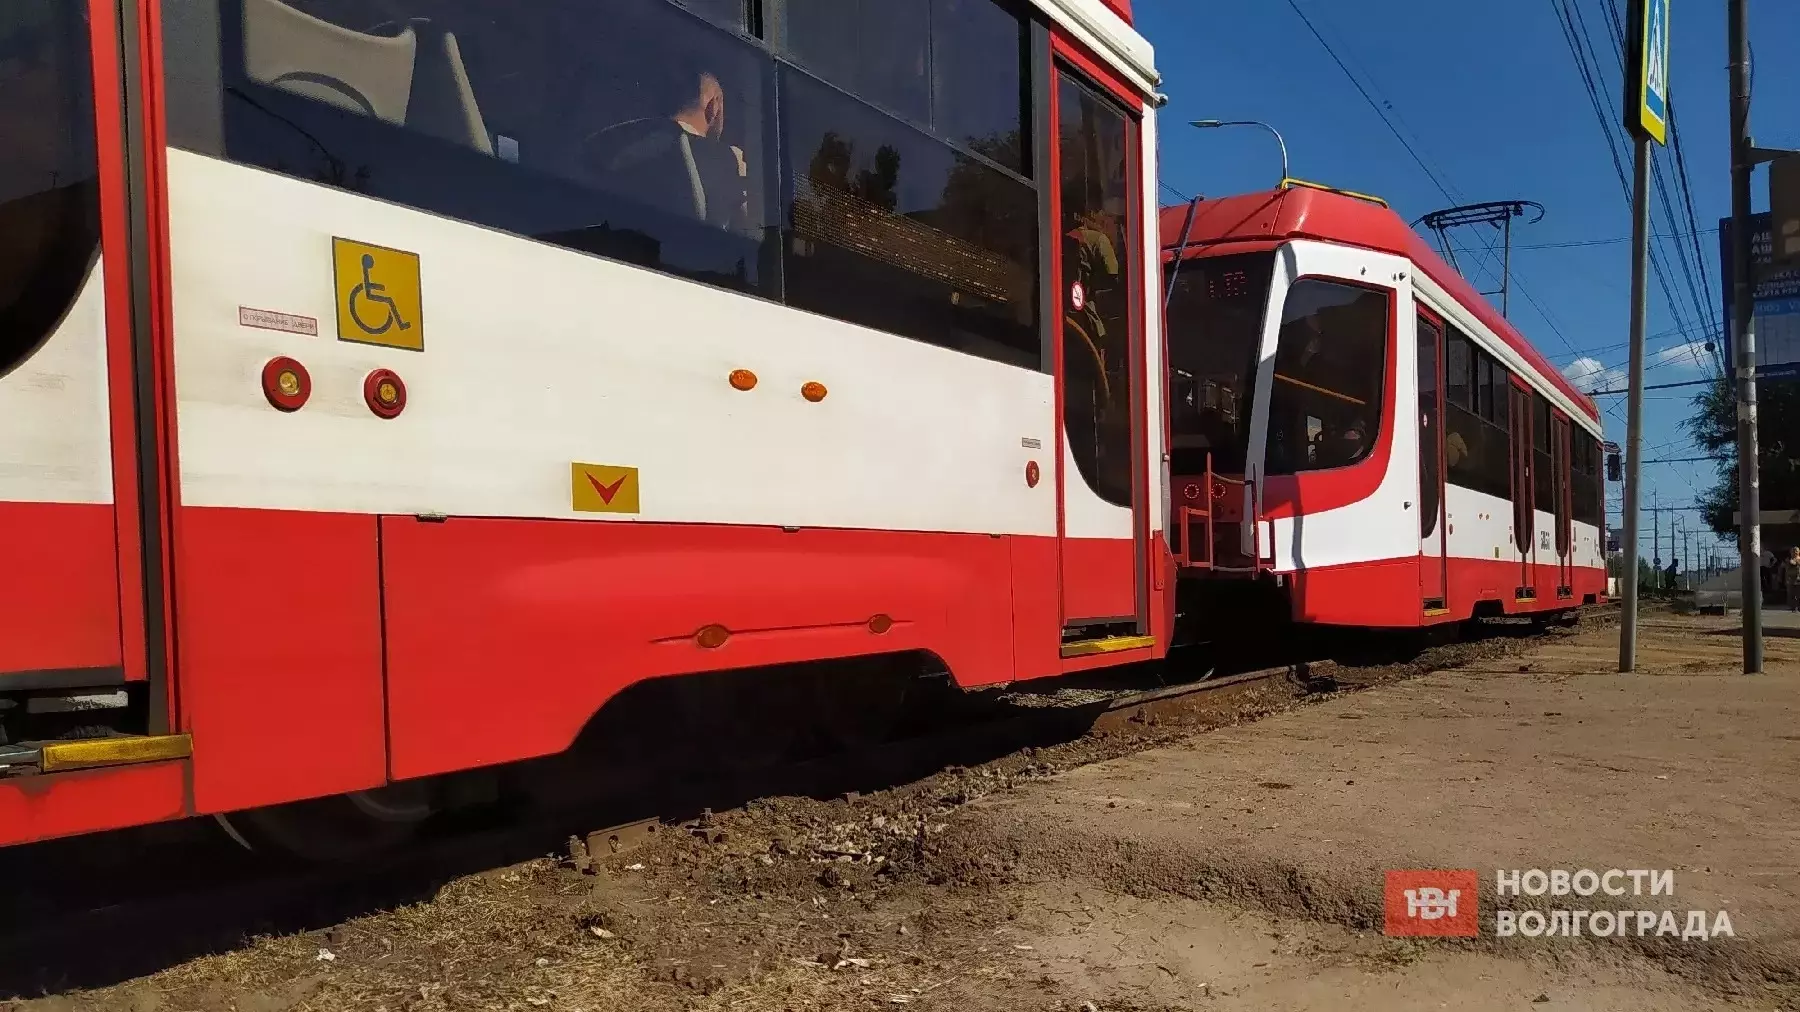 Линию СТ в Волгограде планируют вновь реконструировать